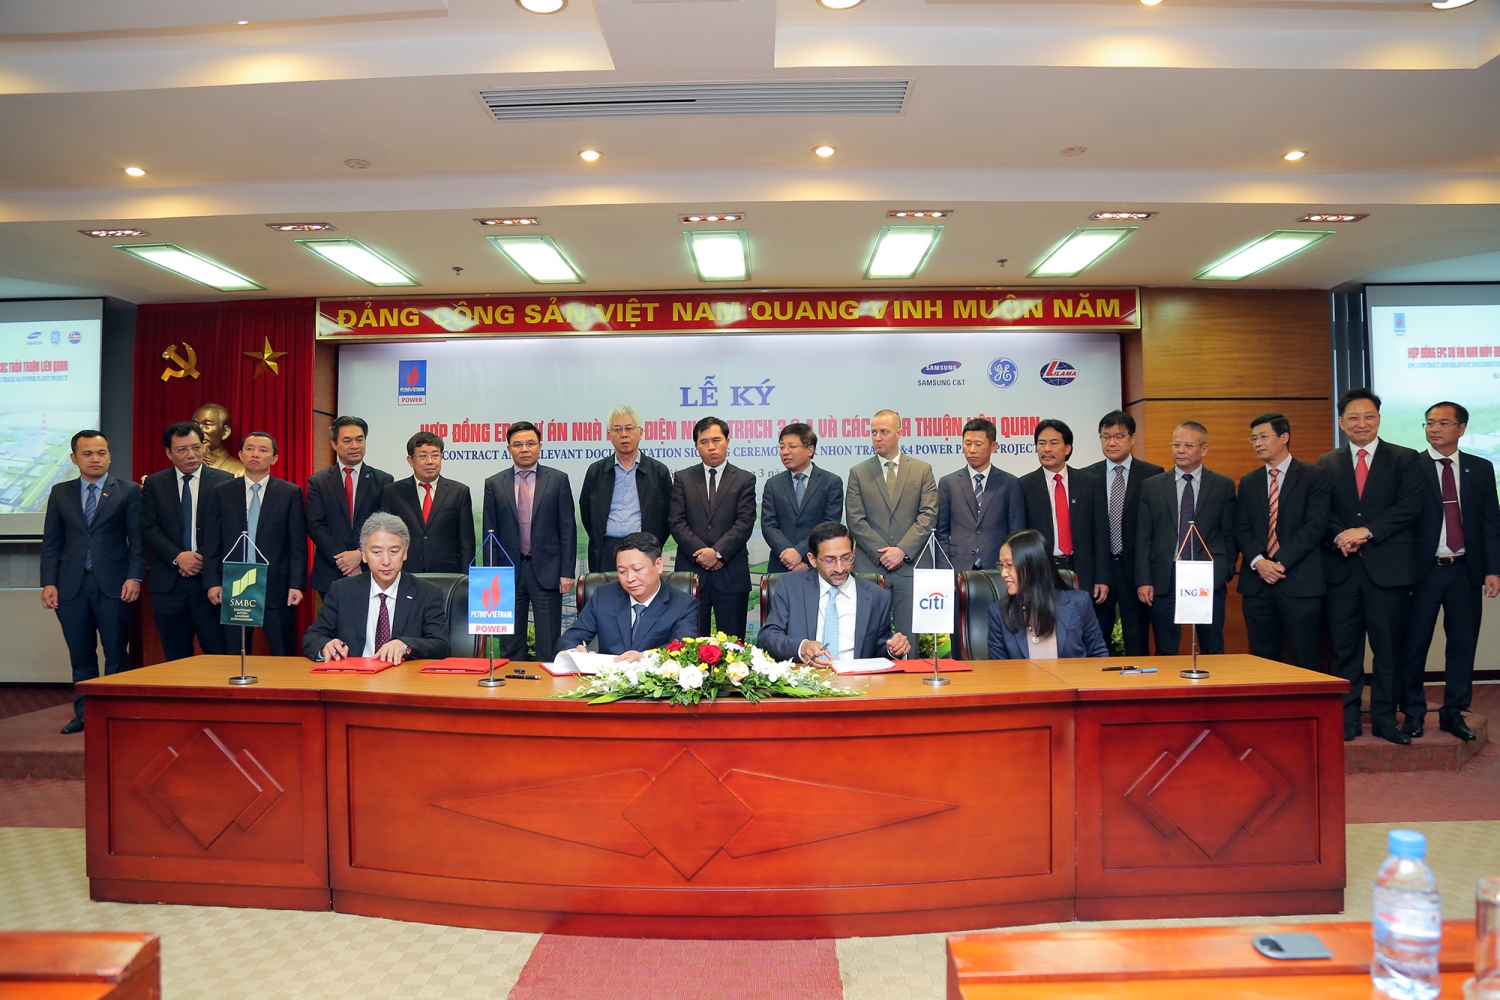 Ký kết hợp đồng EPC Dự án Nhà máy điện Nhơn Trạch 3&4